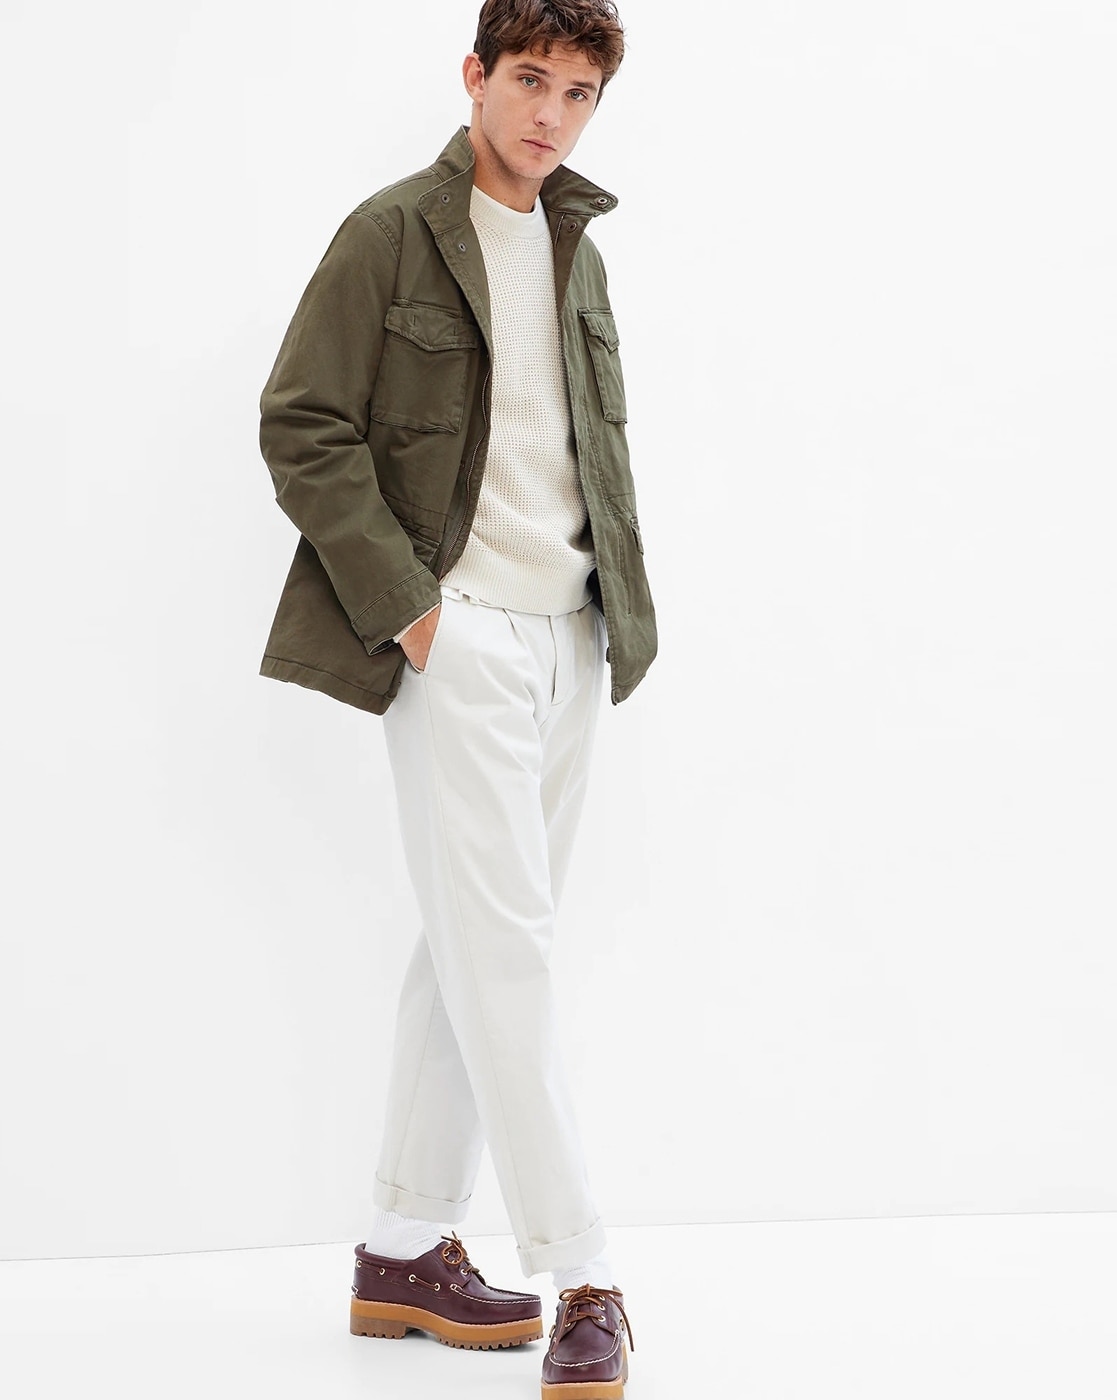 Buy Green & Coats for Men Online | Ajio.com